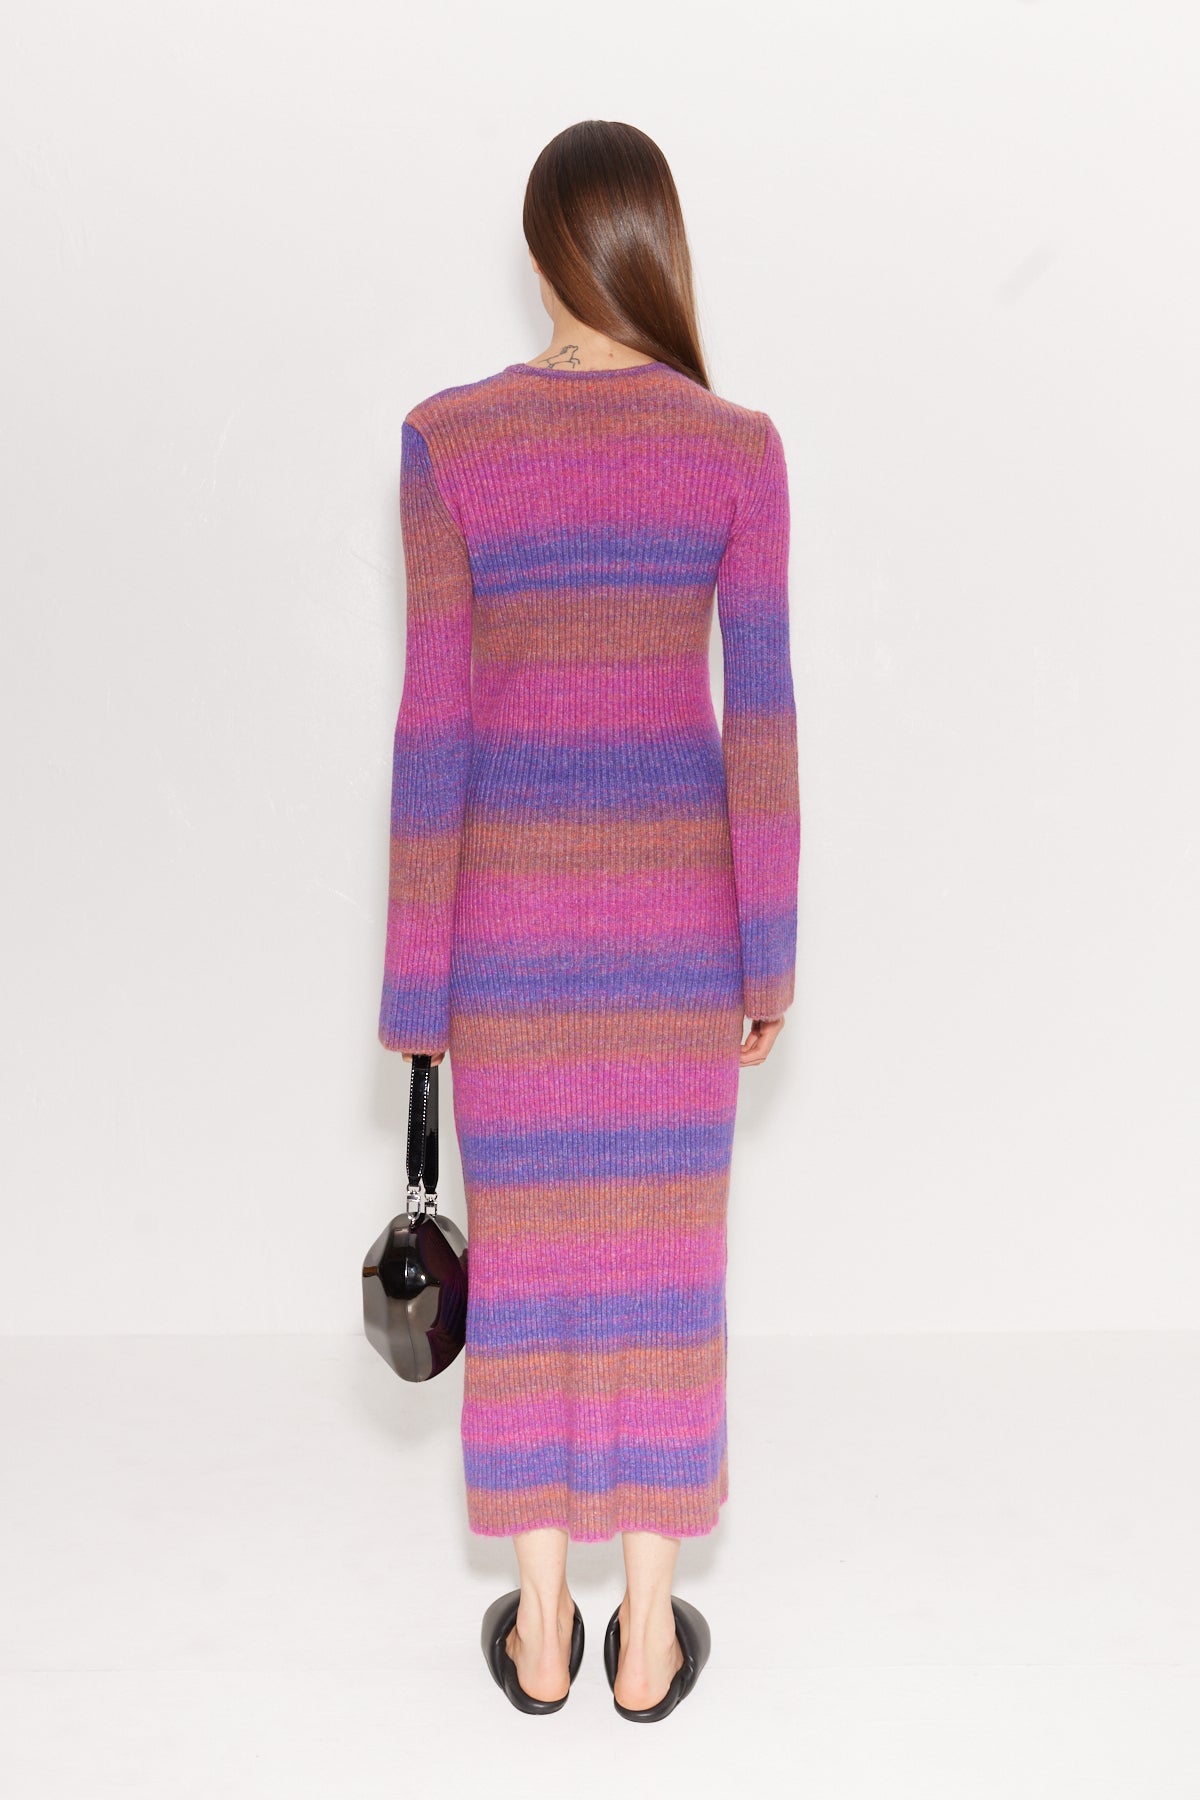 Axon Dress in Distorted Stripe